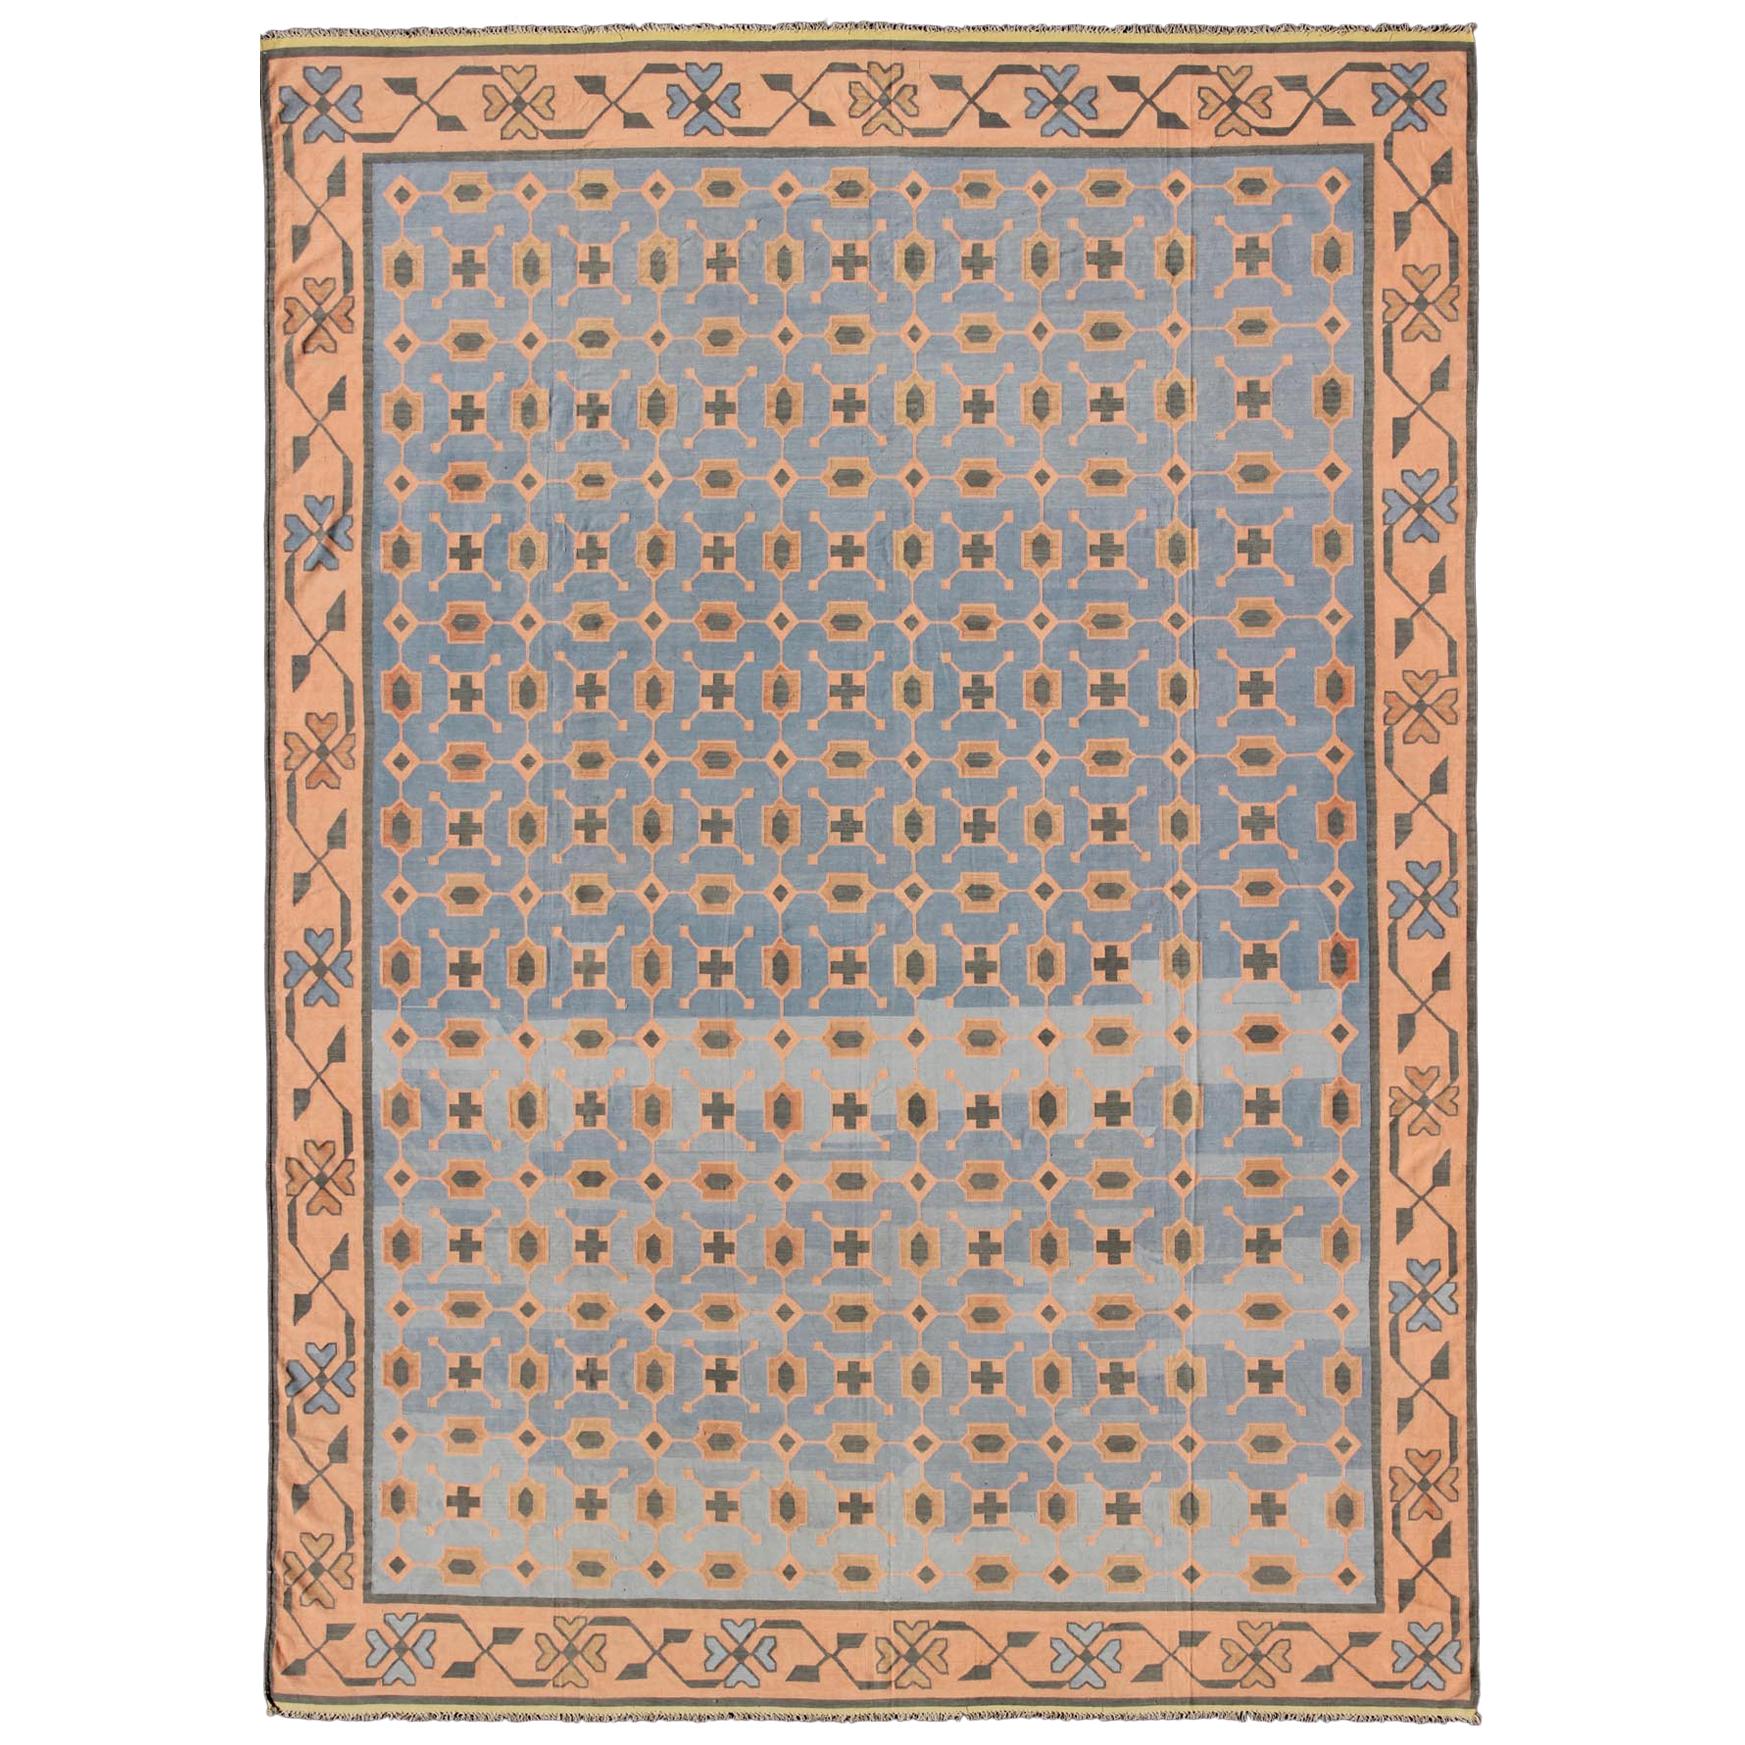 Mehrfarbiger indischer Dhurrie-Teppich aus Baumwolle im Vintage-Stil mit geometrischem All-Over-Design